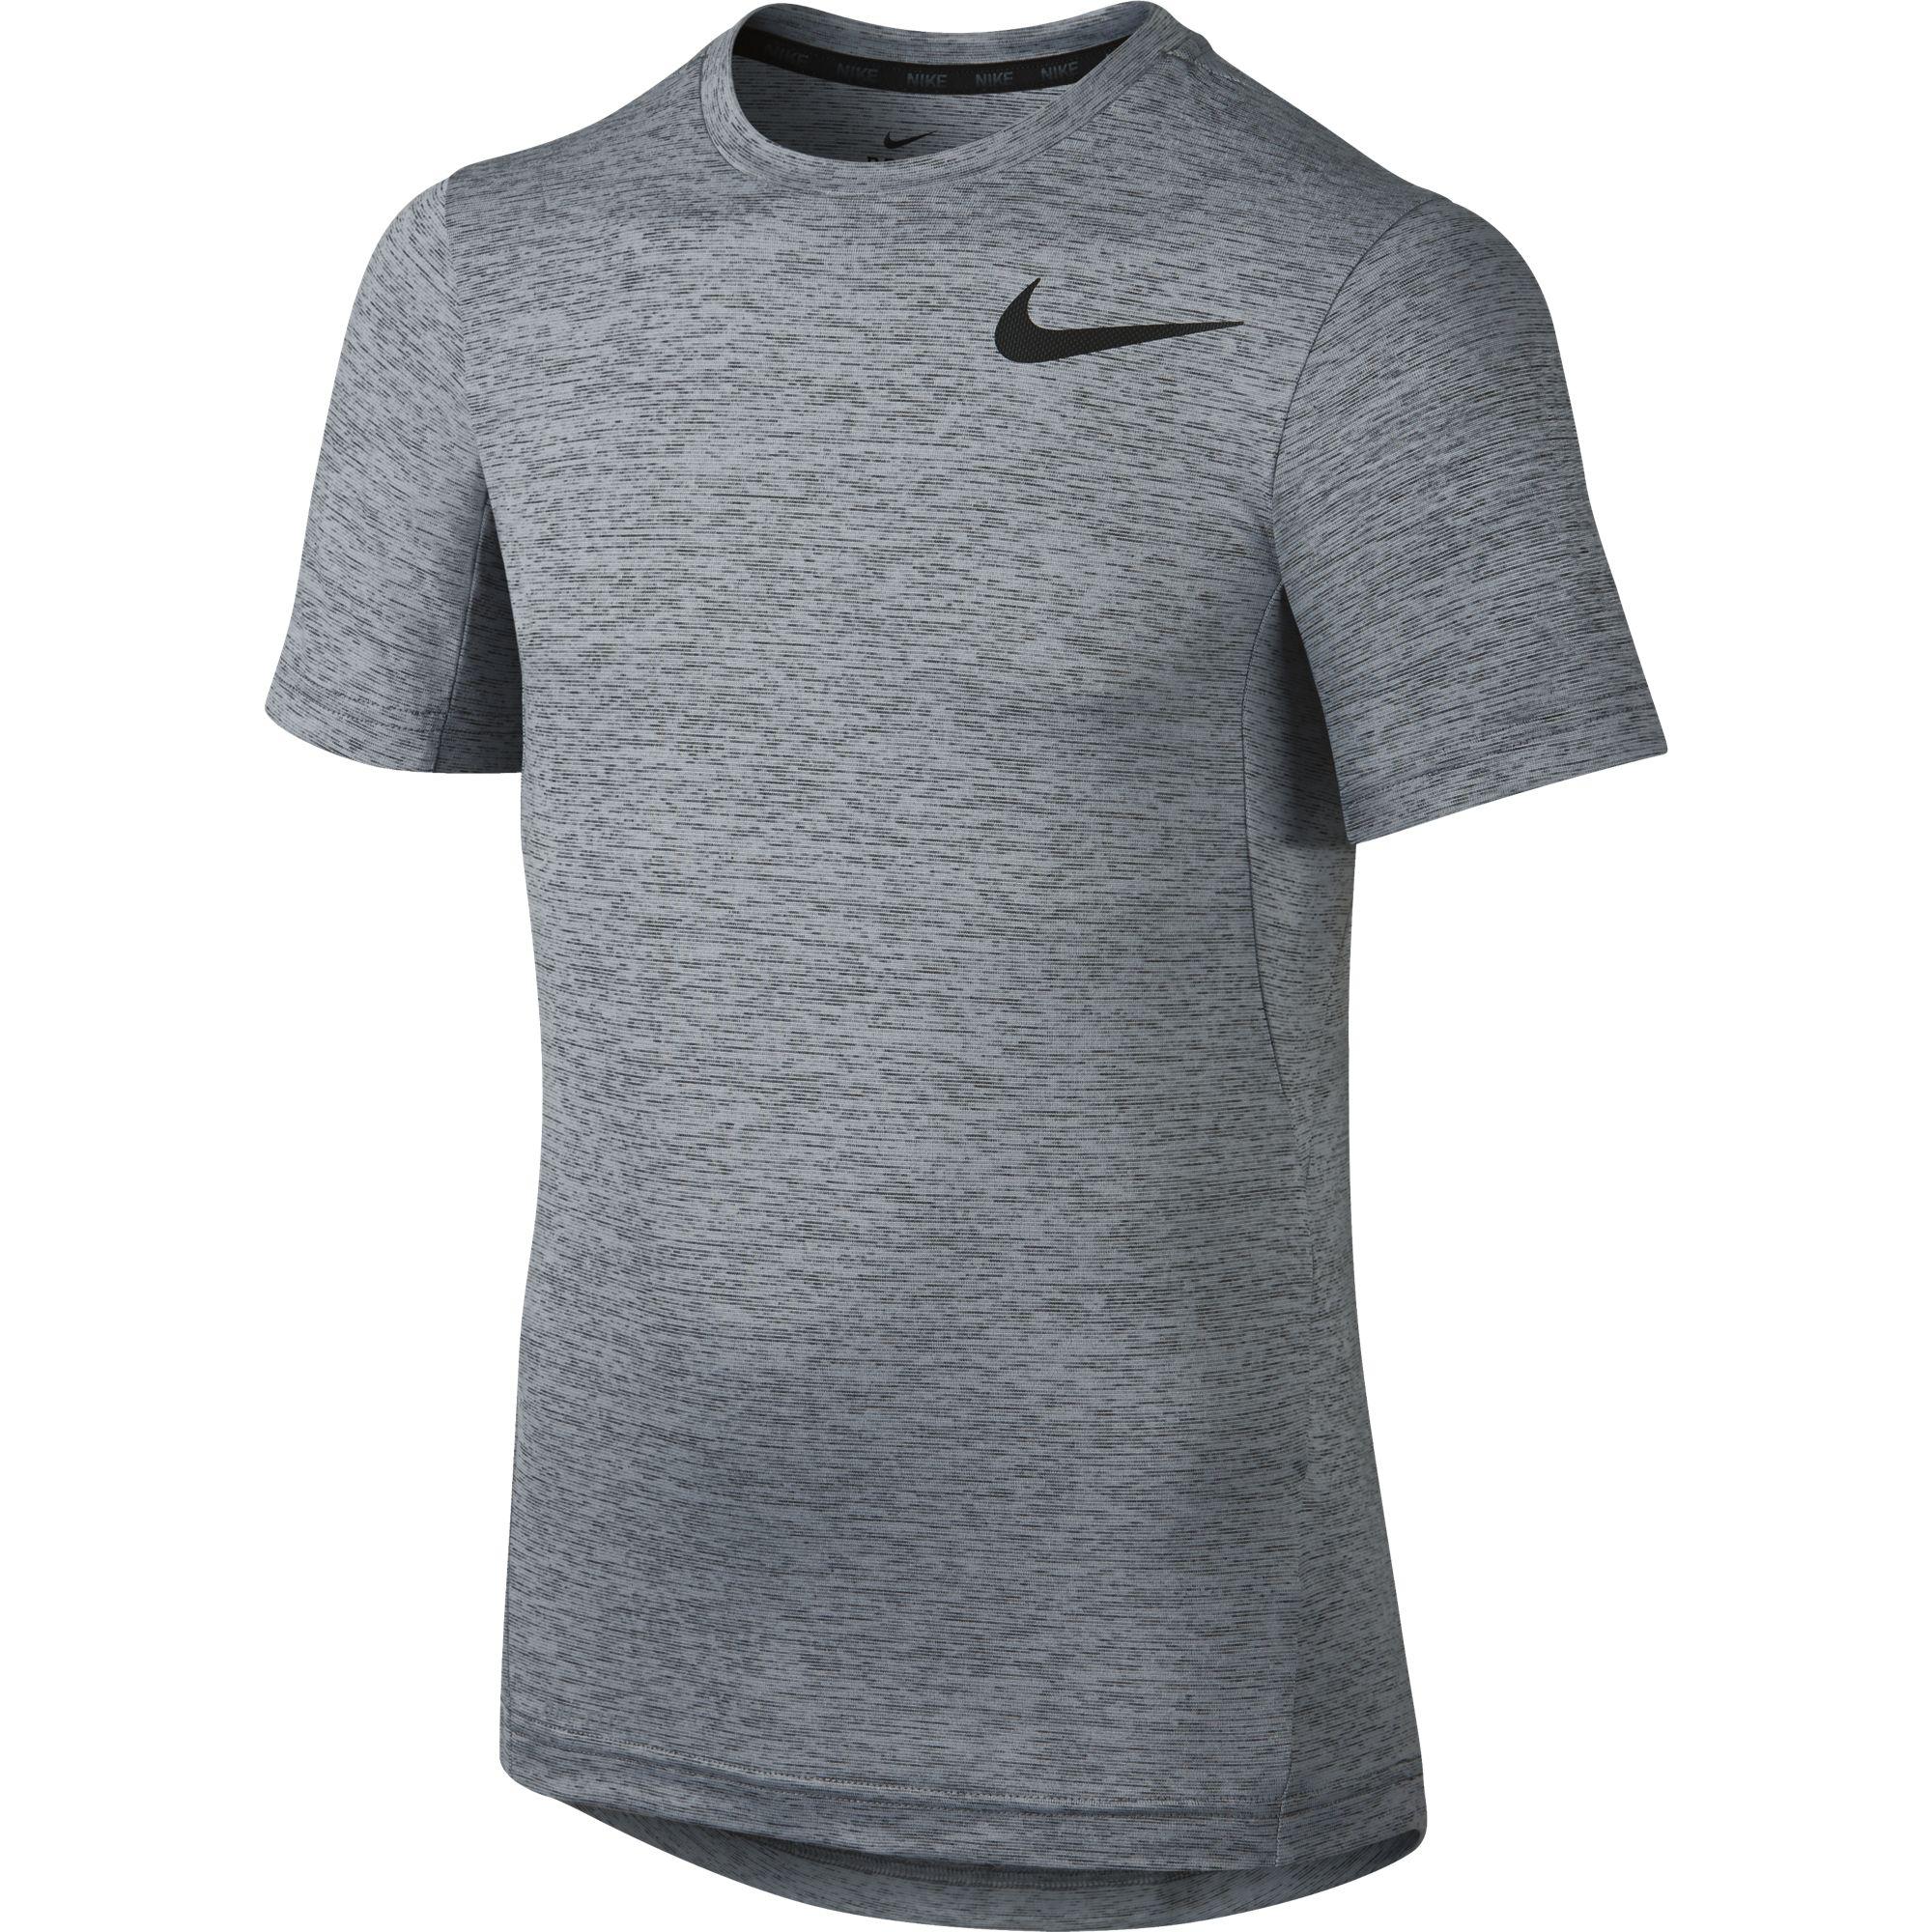 Nike Boys Dri-FIT Training Jersey - Cool Grey/Black - Tennisnuts.com